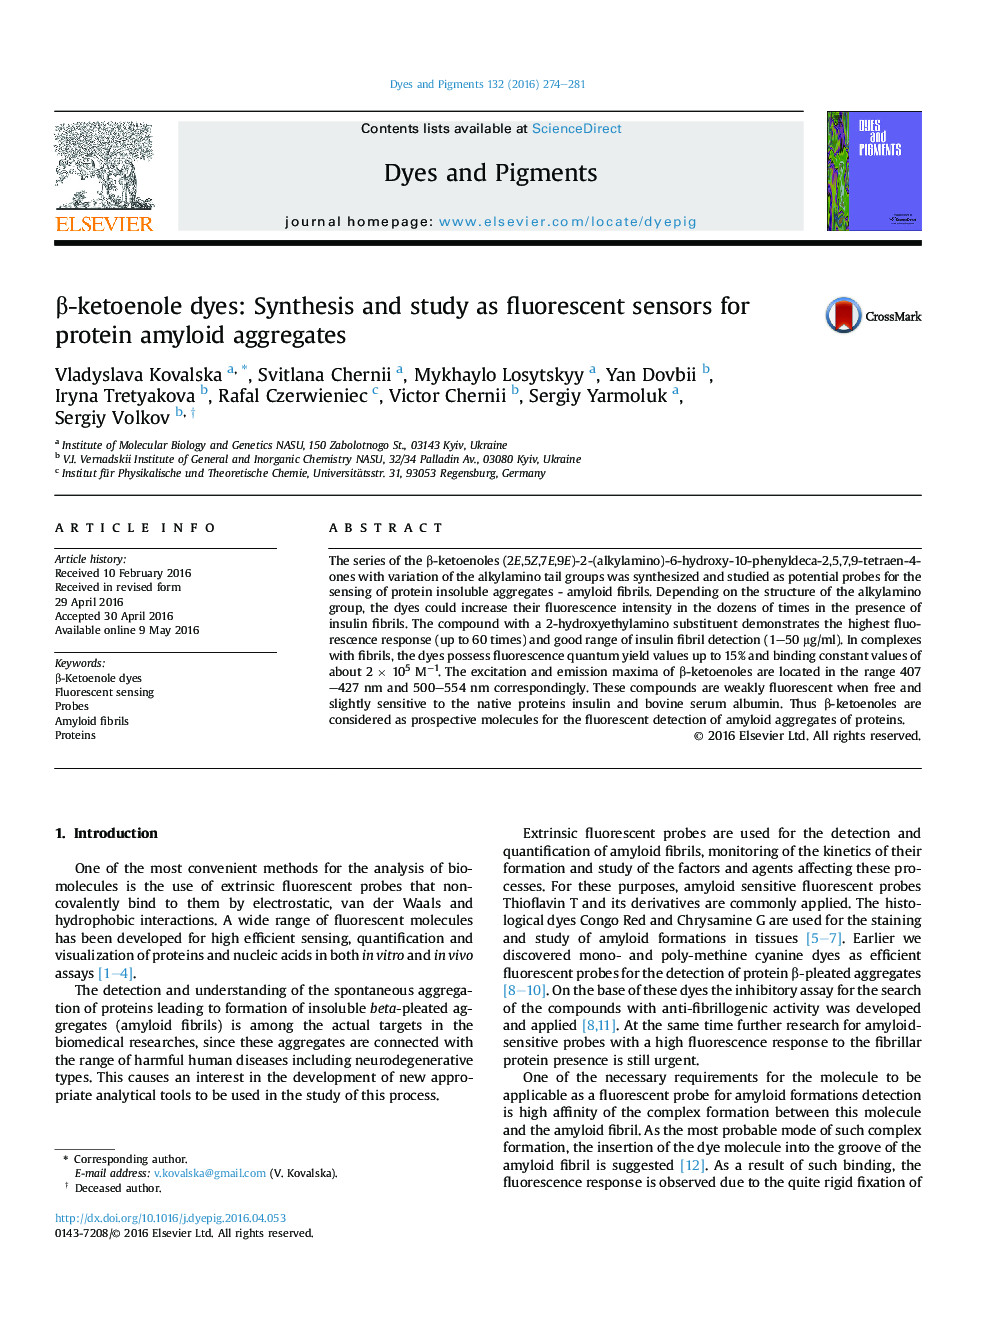 β-ketoenole dyes: Synthesis and study as fluorescent sensors for protein amyloid aggregates